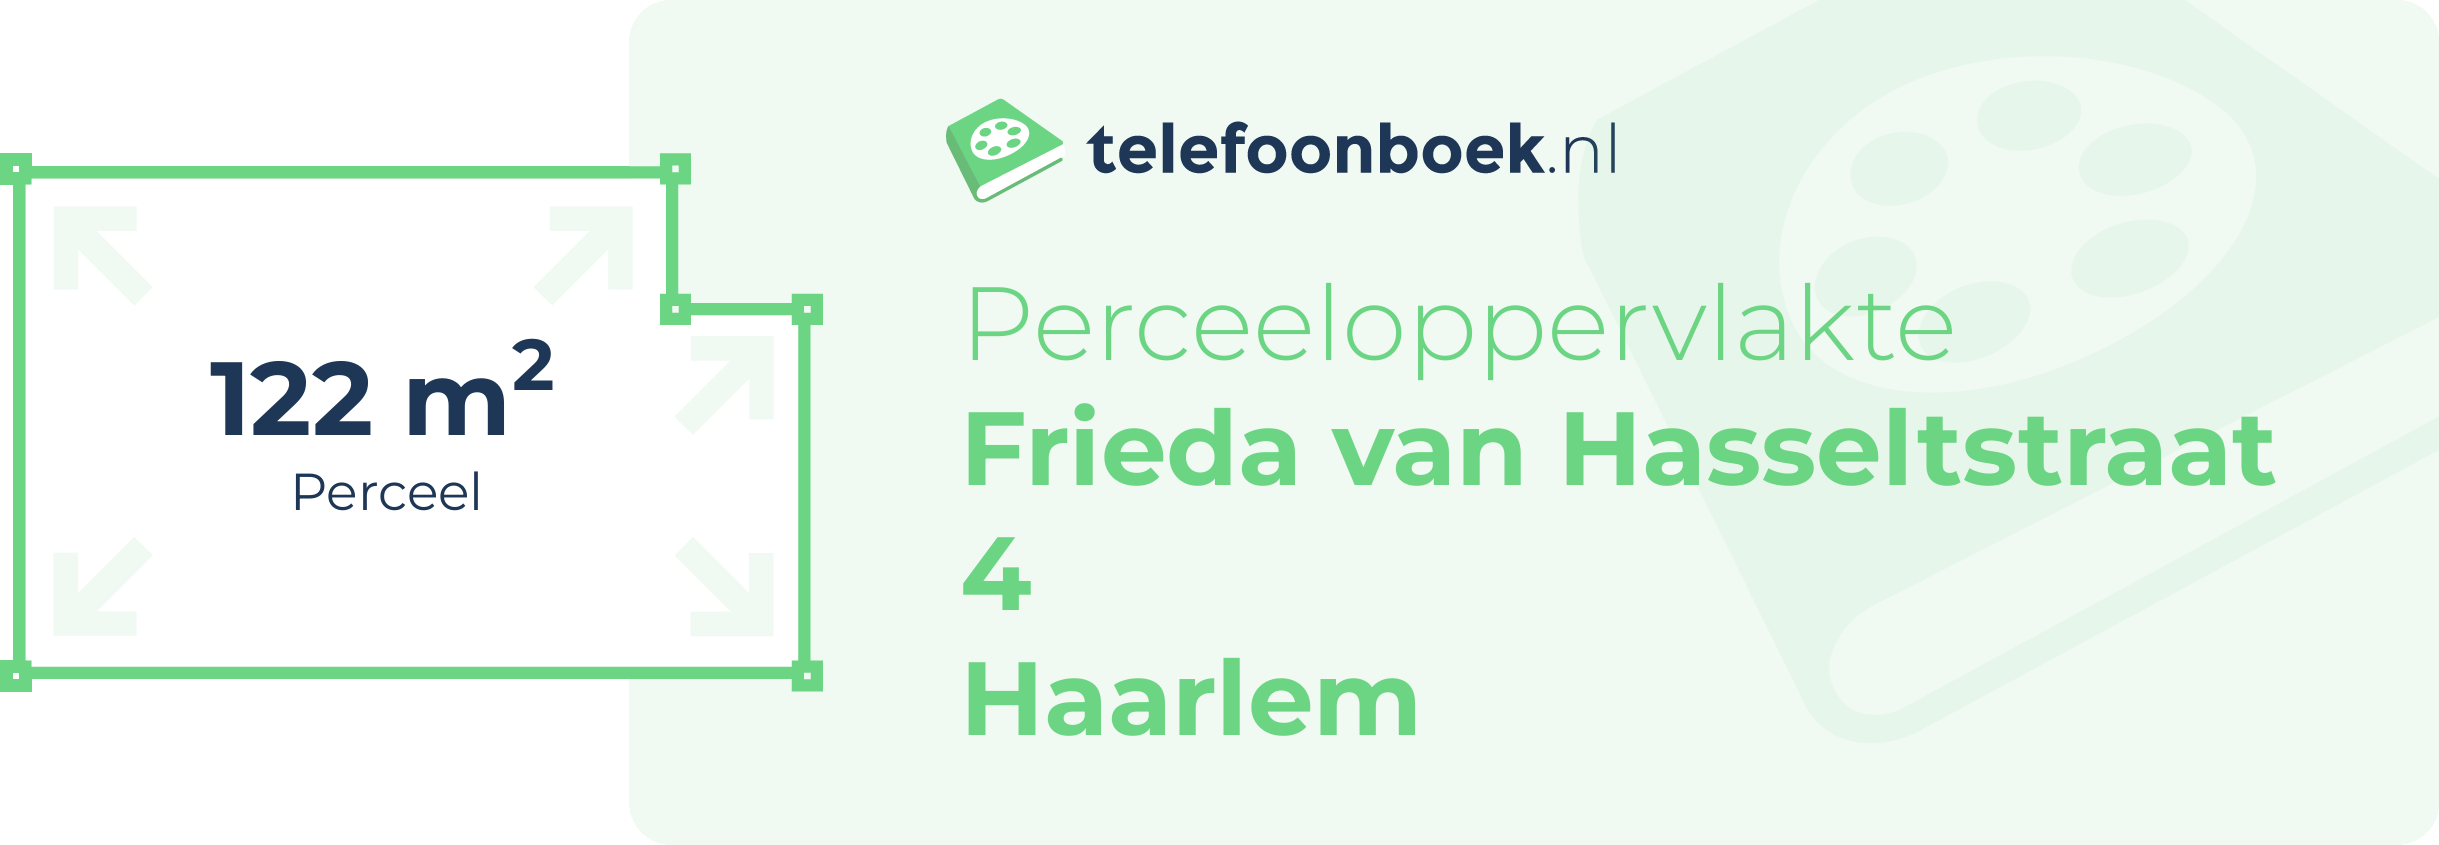 Perceeloppervlakte Frieda Van Hasseltstraat 4 Haarlem